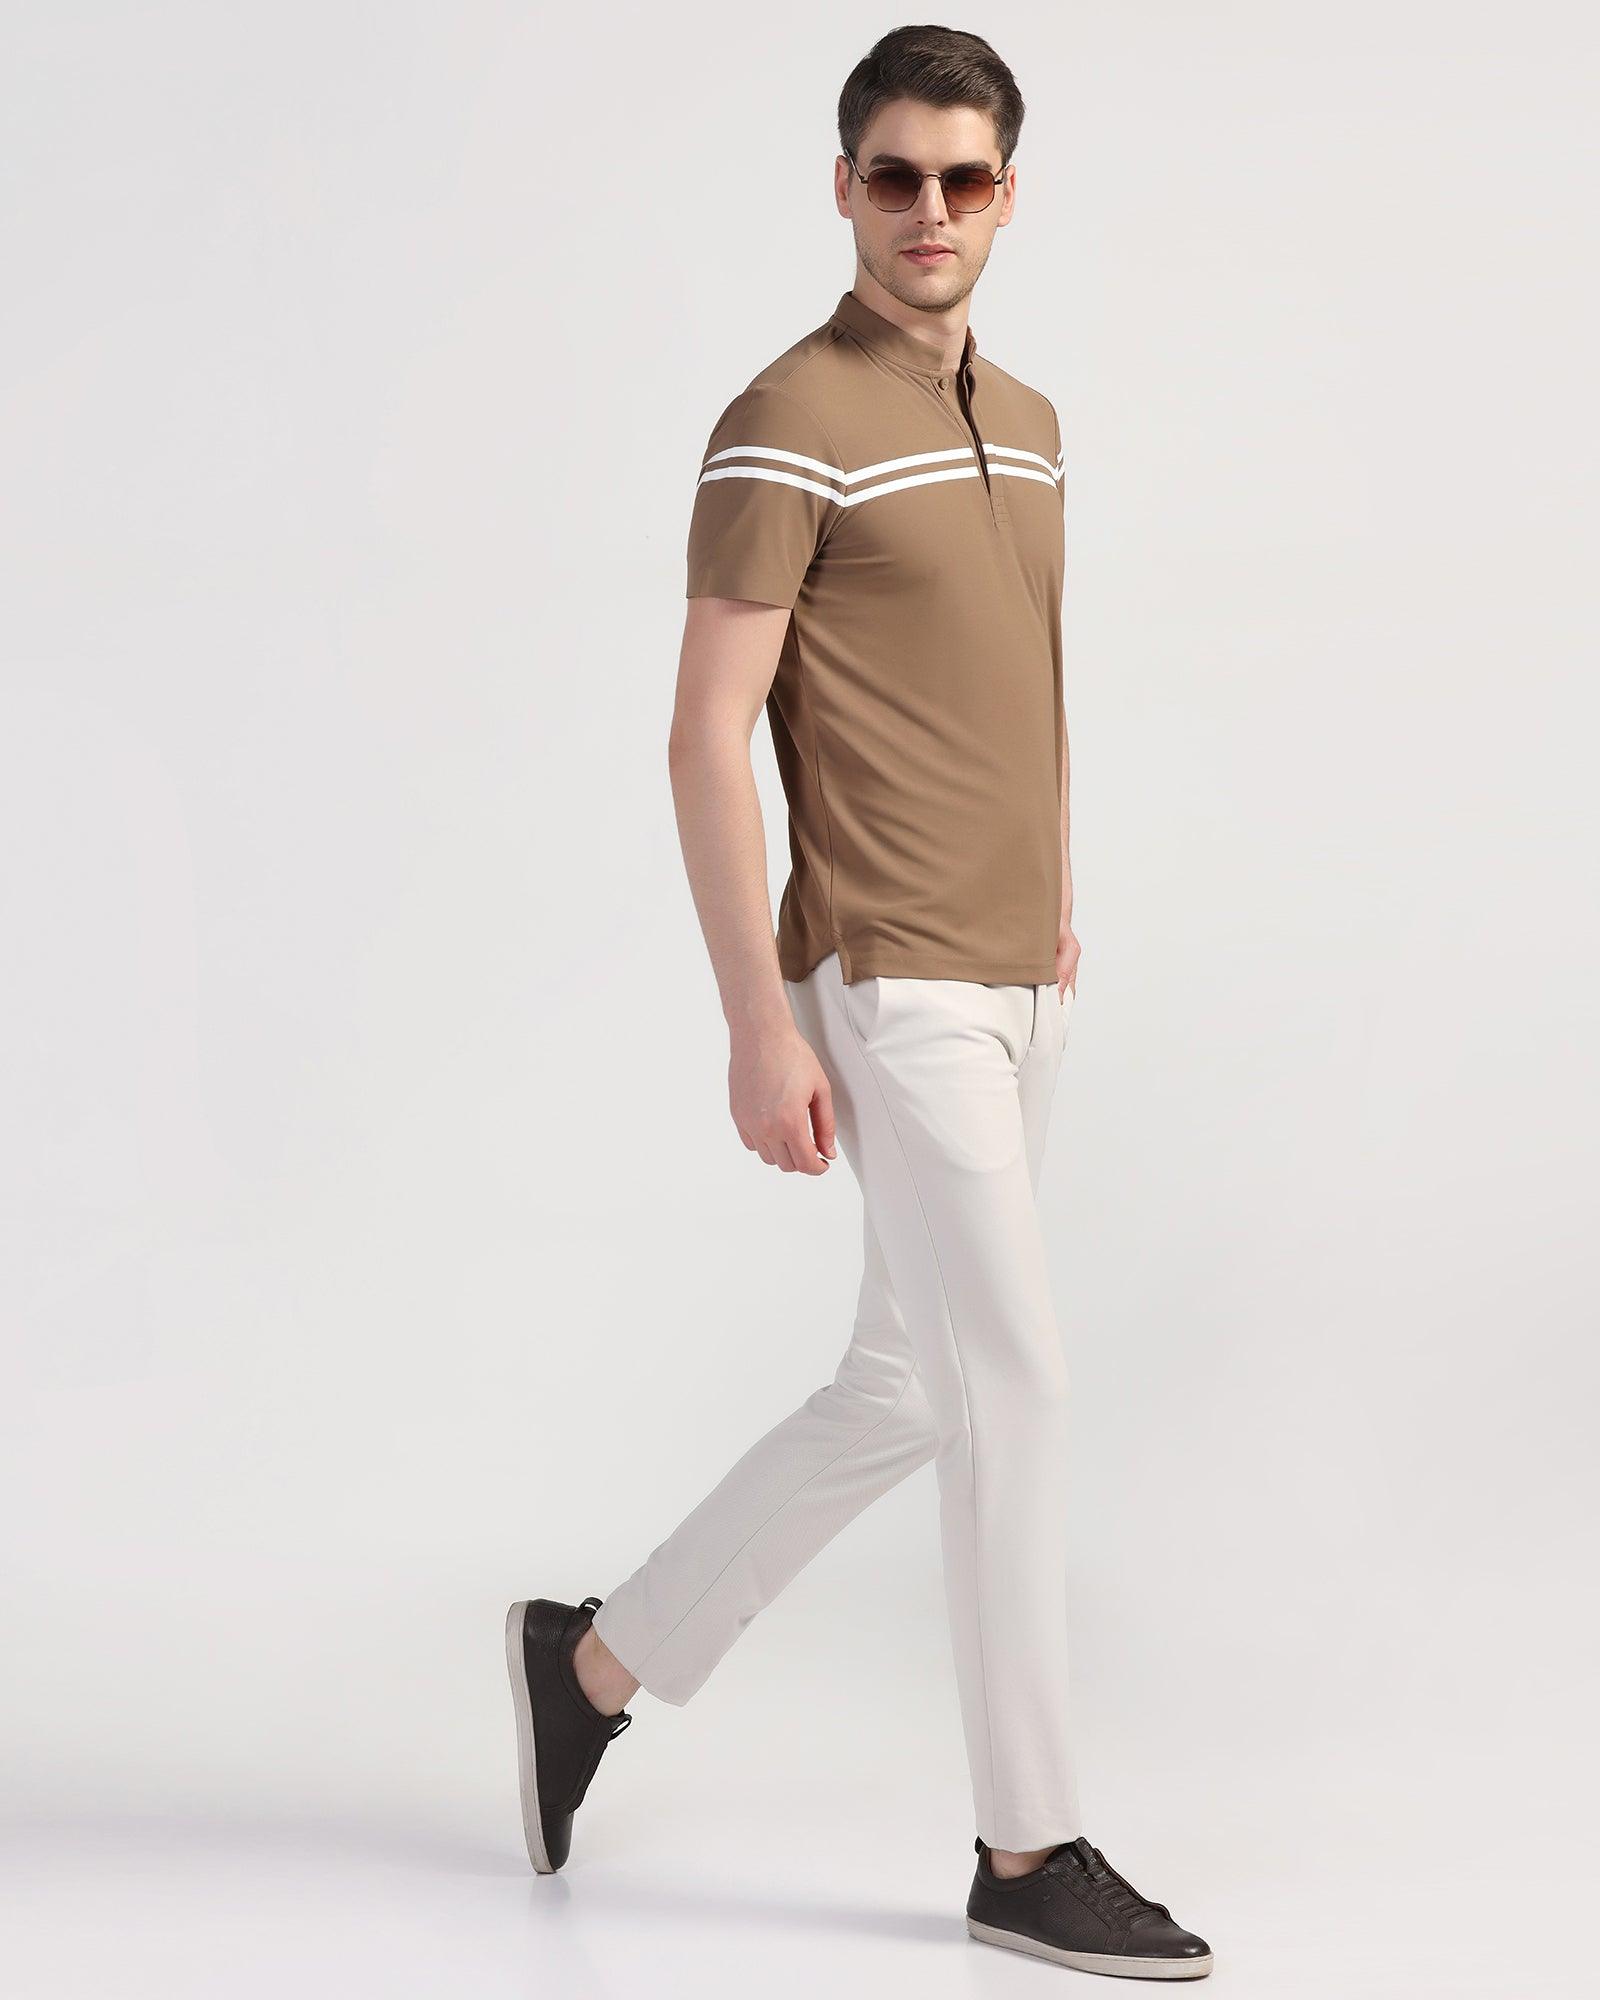 TechPro Polo Brown Stripe T-Shirt - Saylor